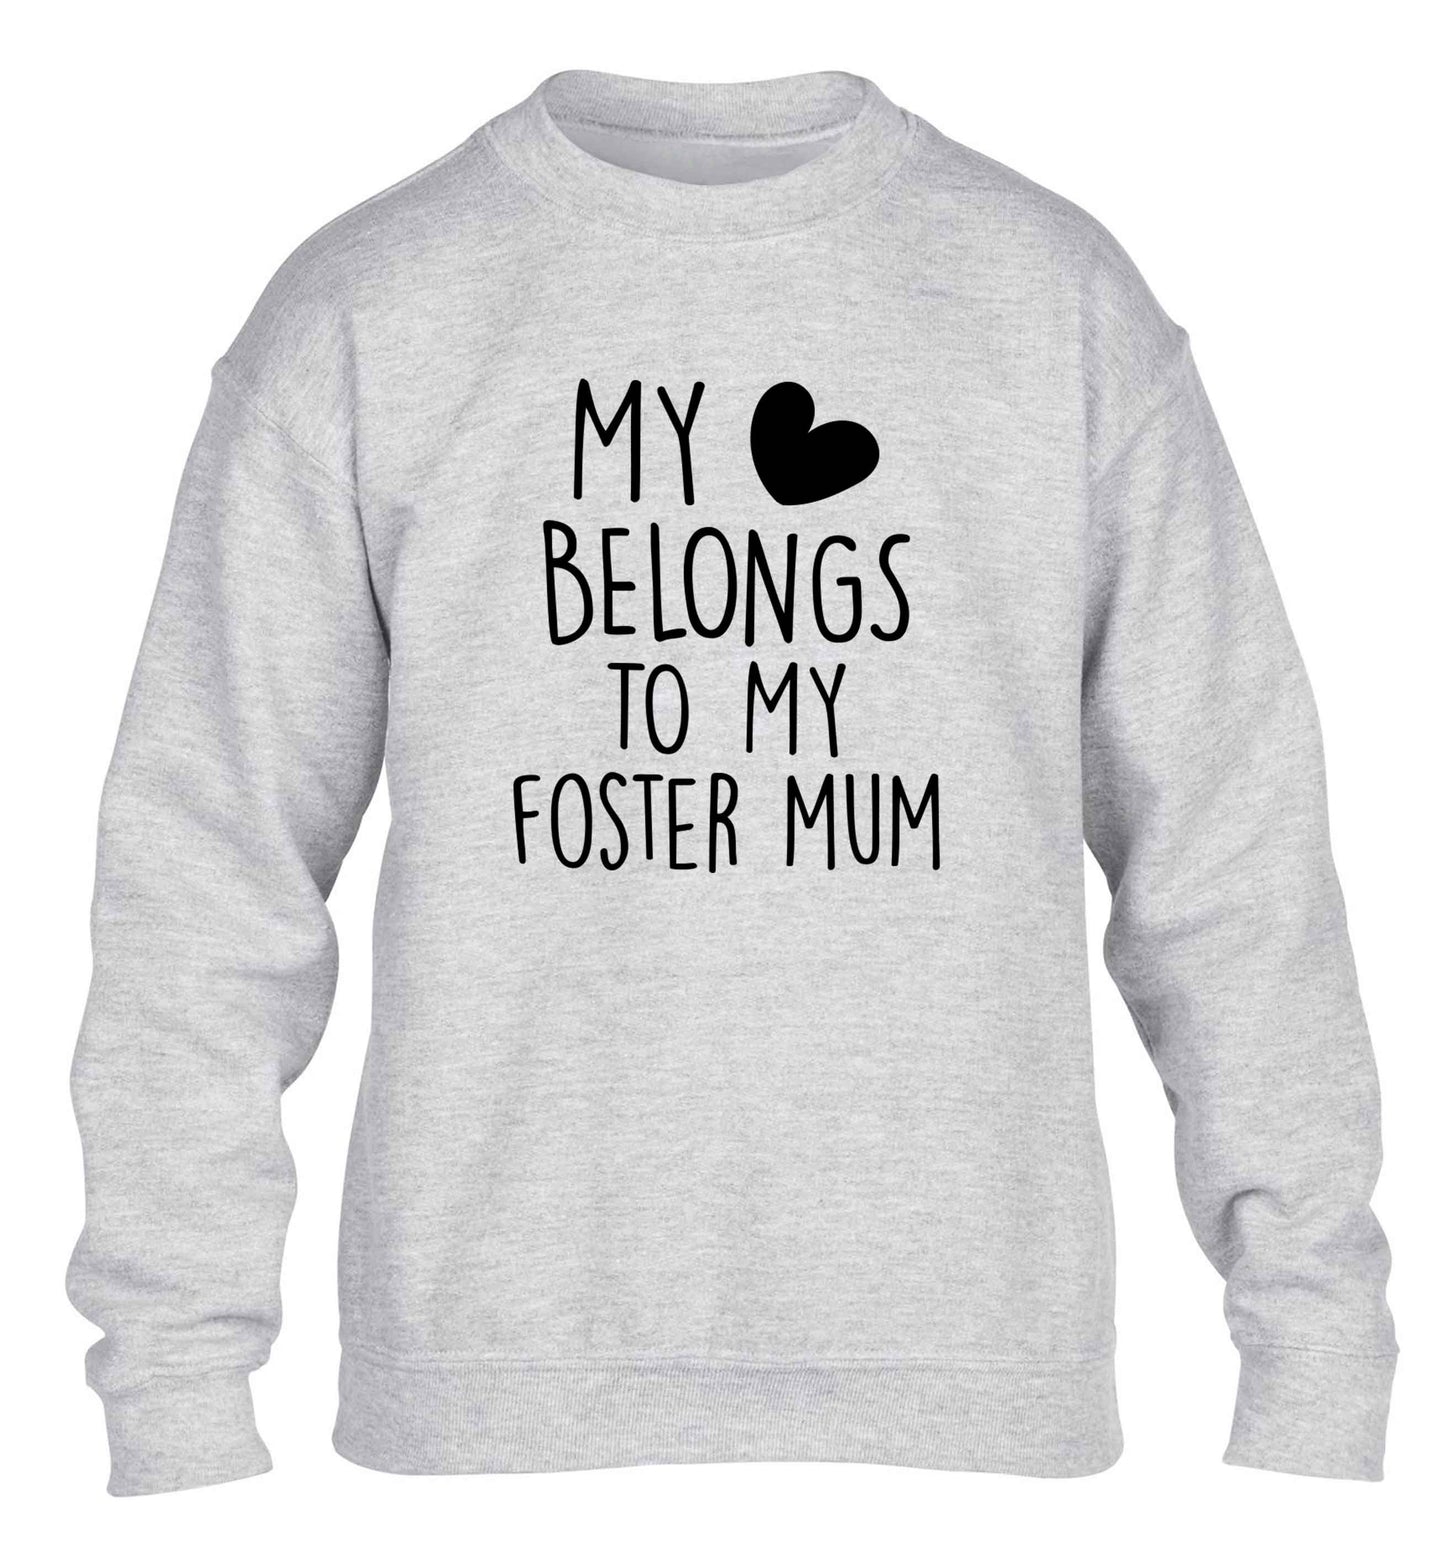 My heart belongs to my foster mum children's grey sweater 12-13 Years